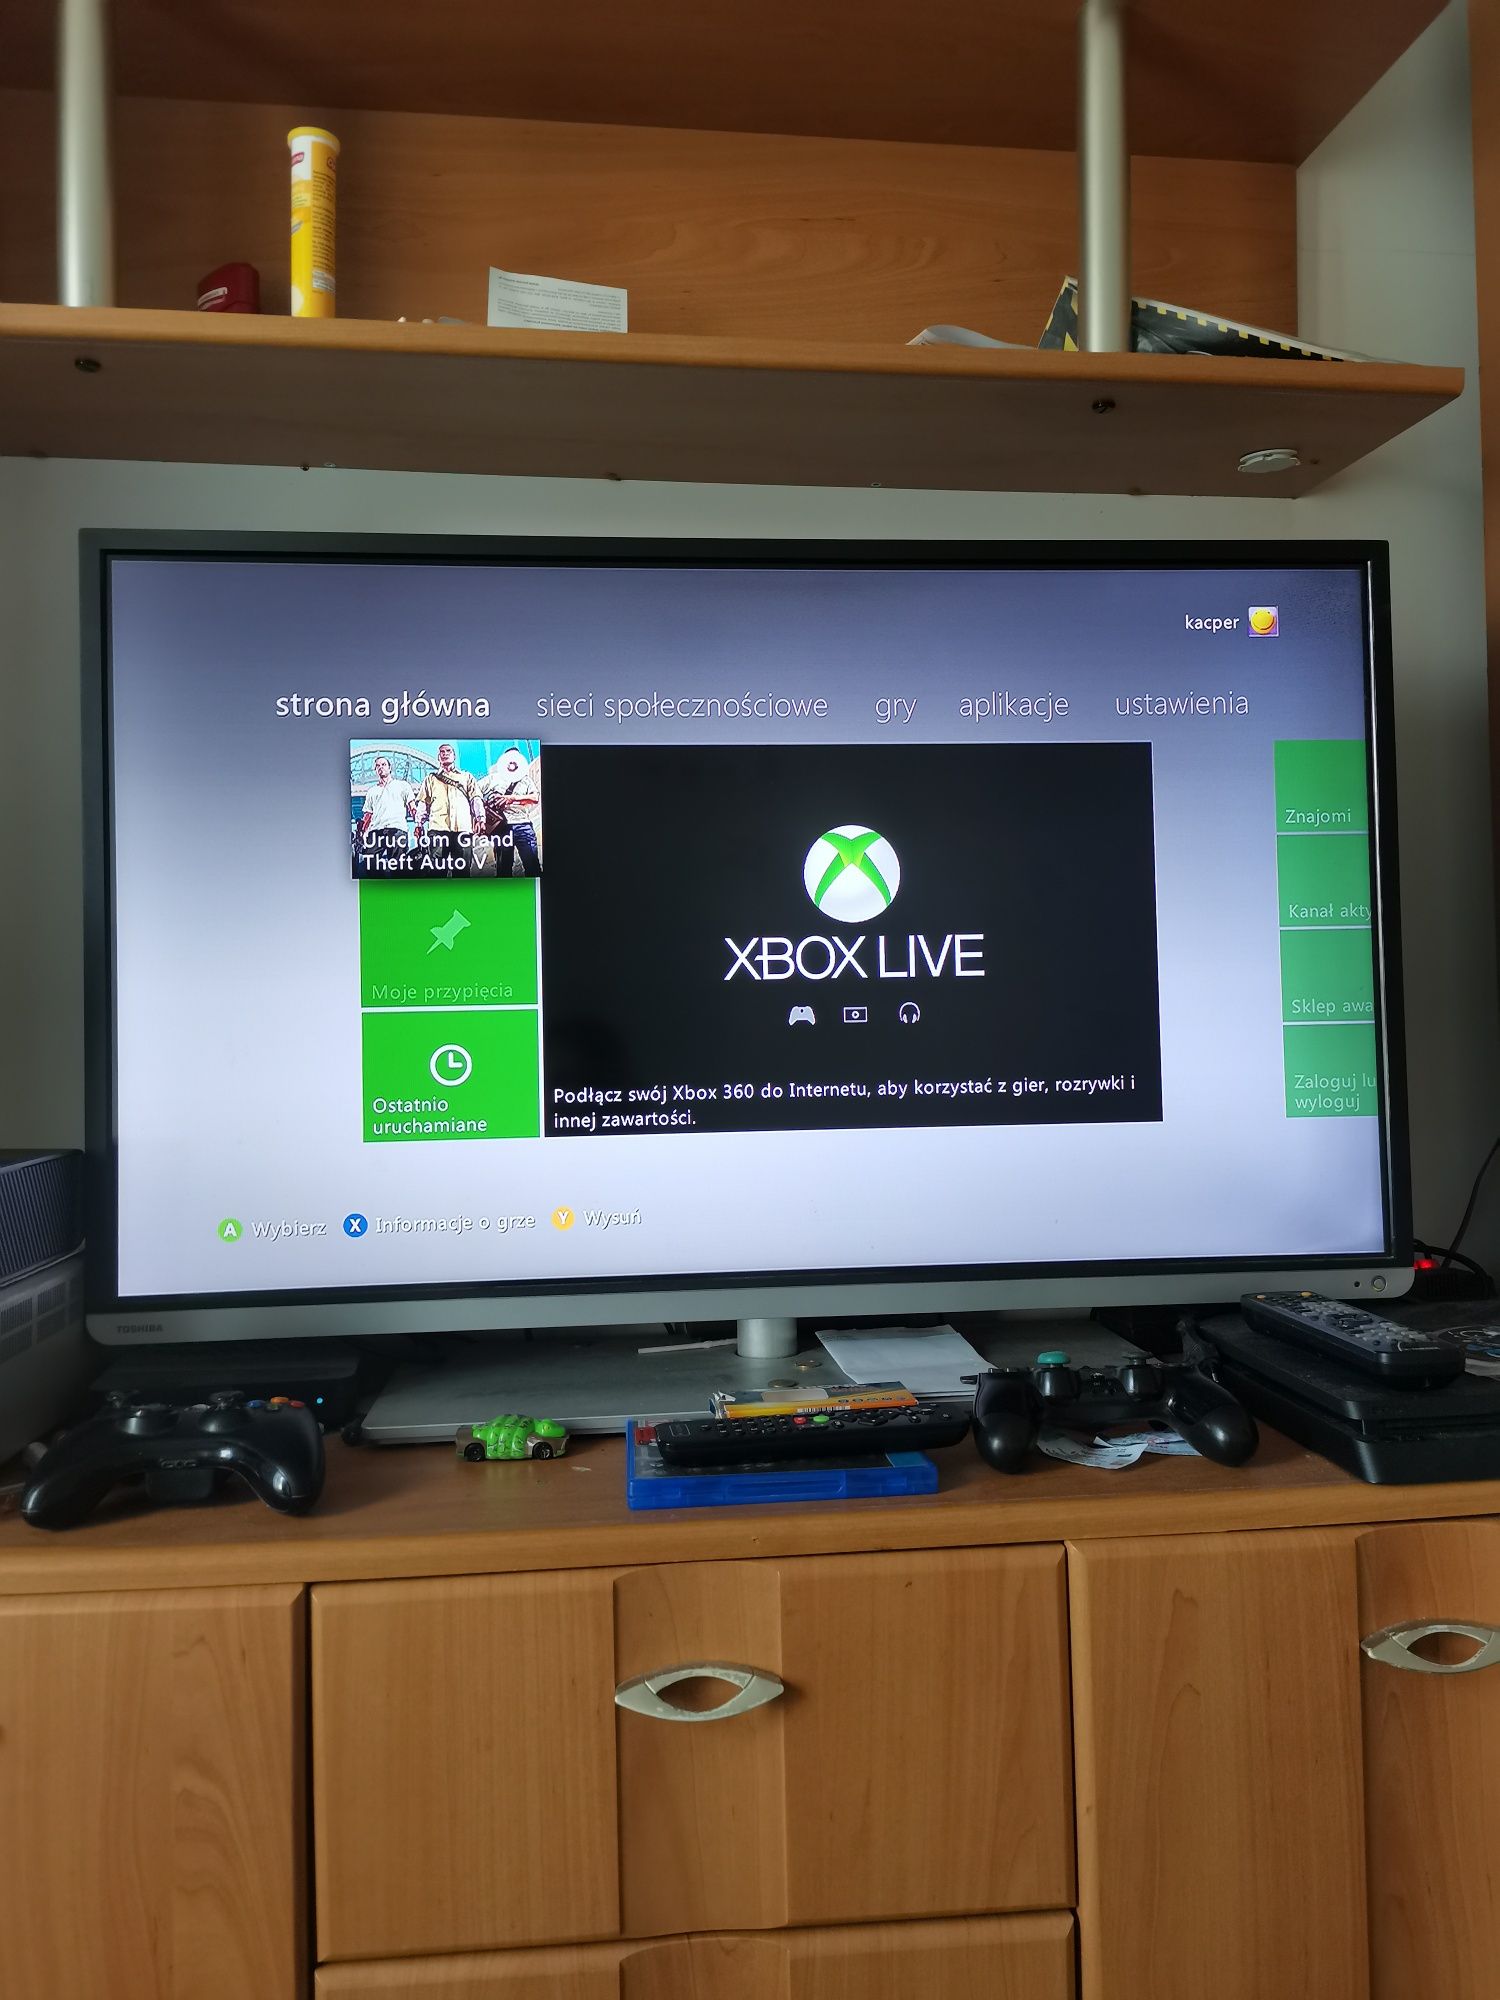 Xbox 360 E slim, 250 GB, 1 pad oryginał, plus gta 5 gra